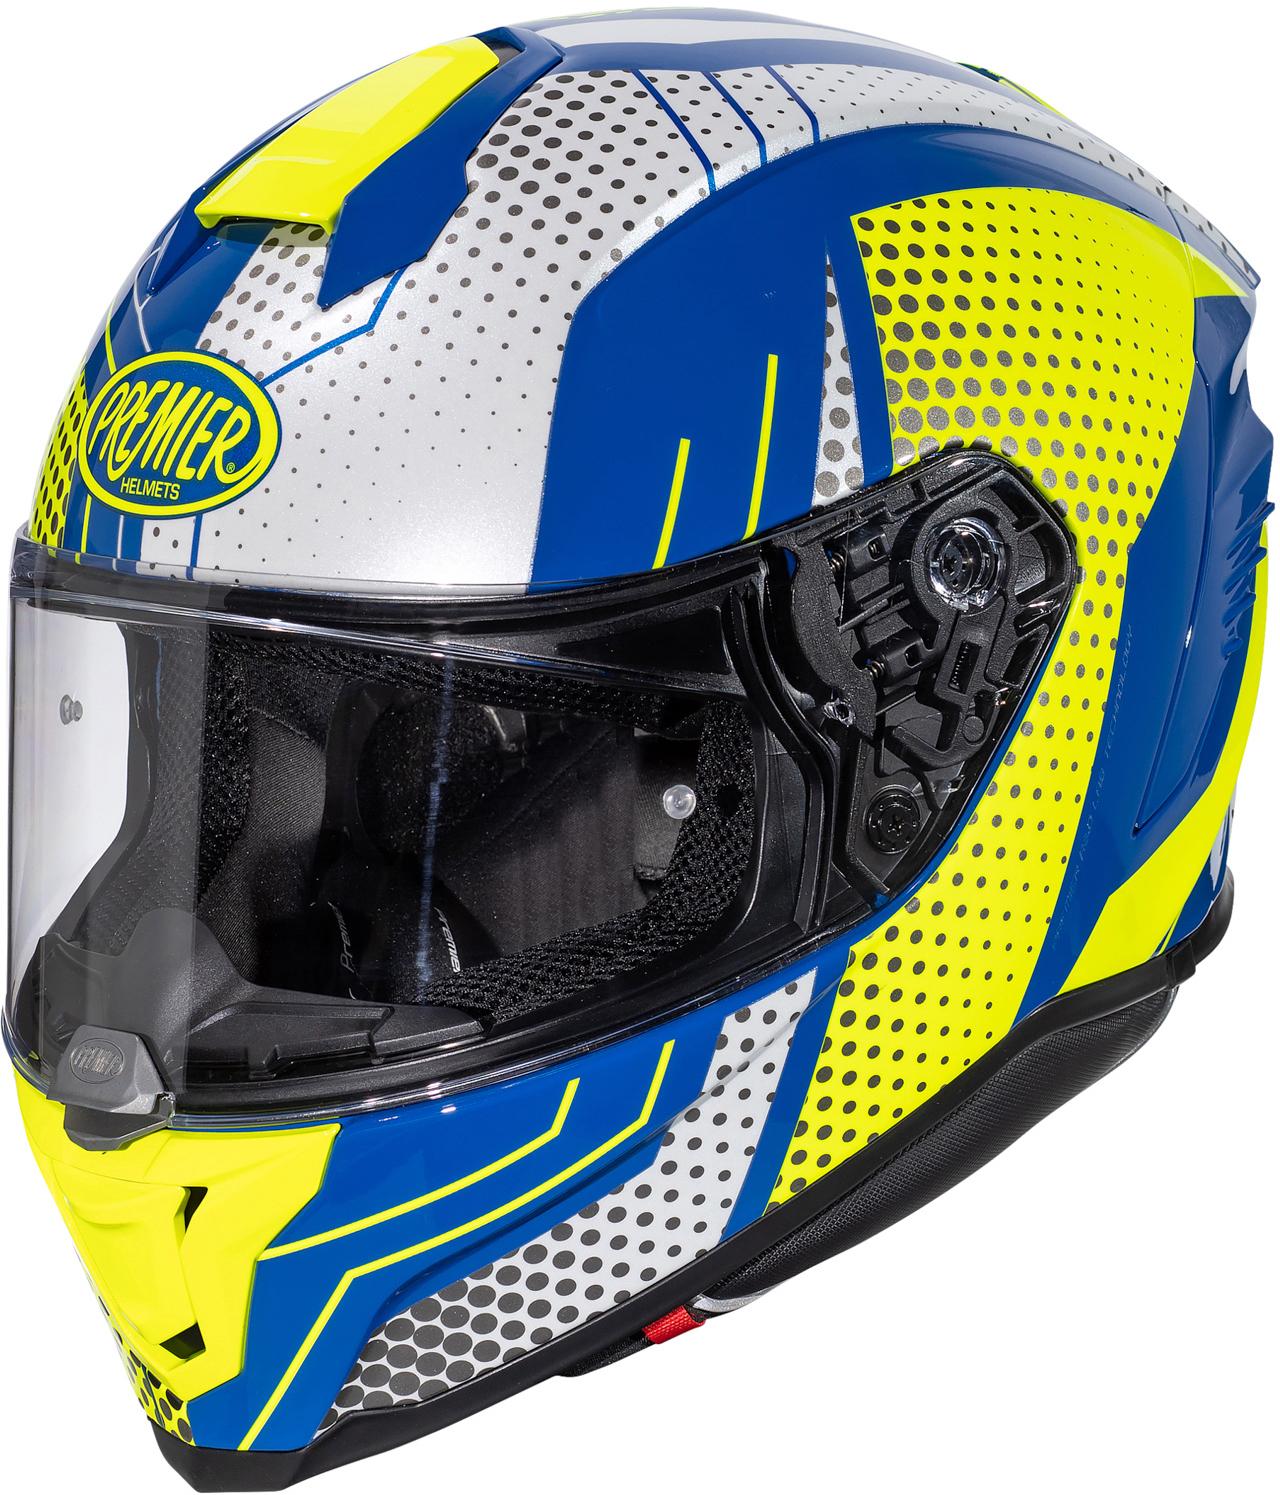 Premier Hyper Bp Full Face Motorcycle Helmet - White/Blue, Xl